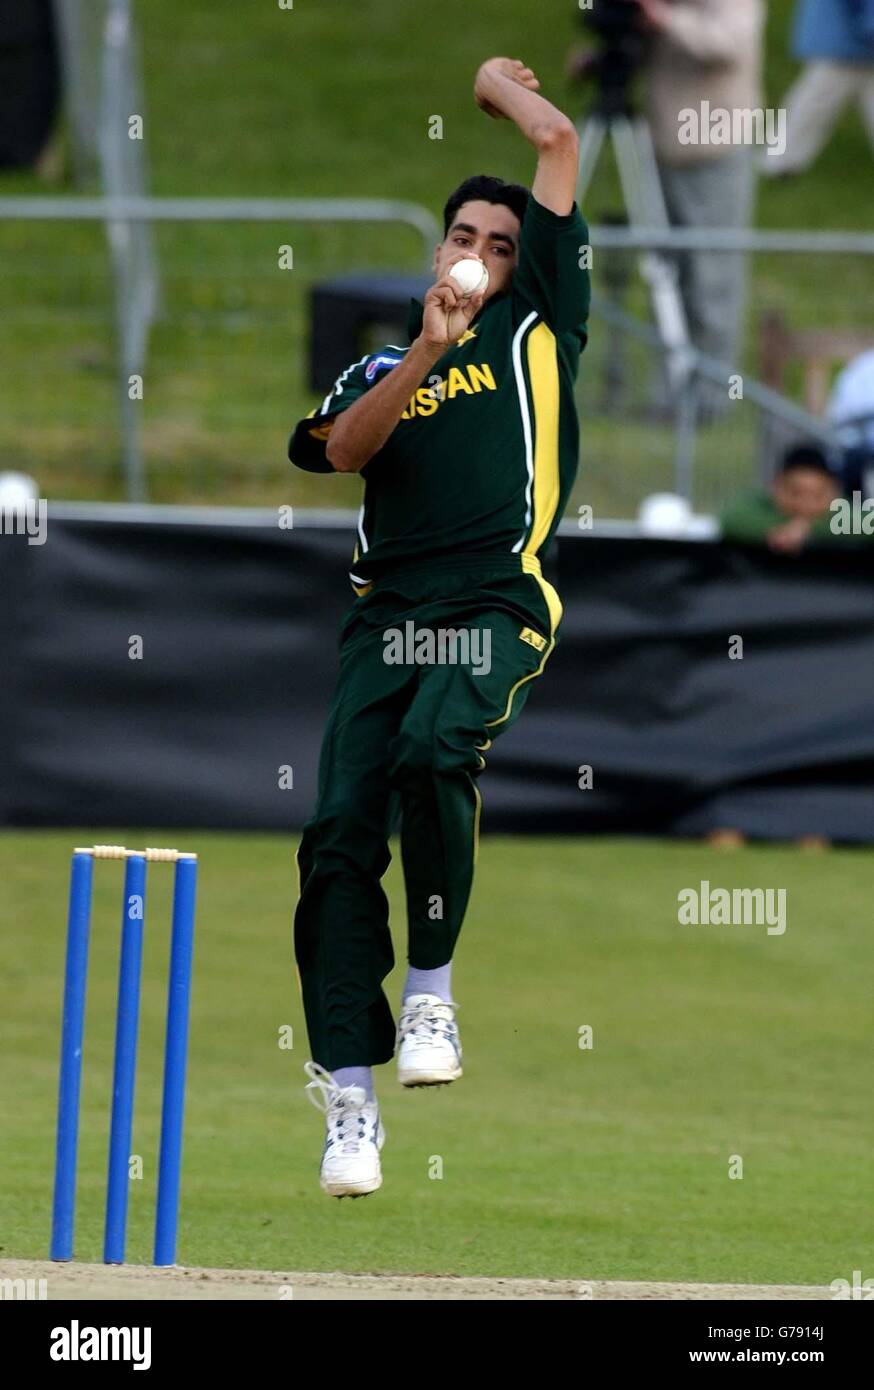 Der pakistanische Schnellbowler Umar Gul während des Tourspiel gegen Schottland im West of Scotland Cricket Club, Glasgow. Pakistan wird im Laufe dieses Monats drei One Day Internationals gegen England in der NatWest Challenge spielen. Stockfoto